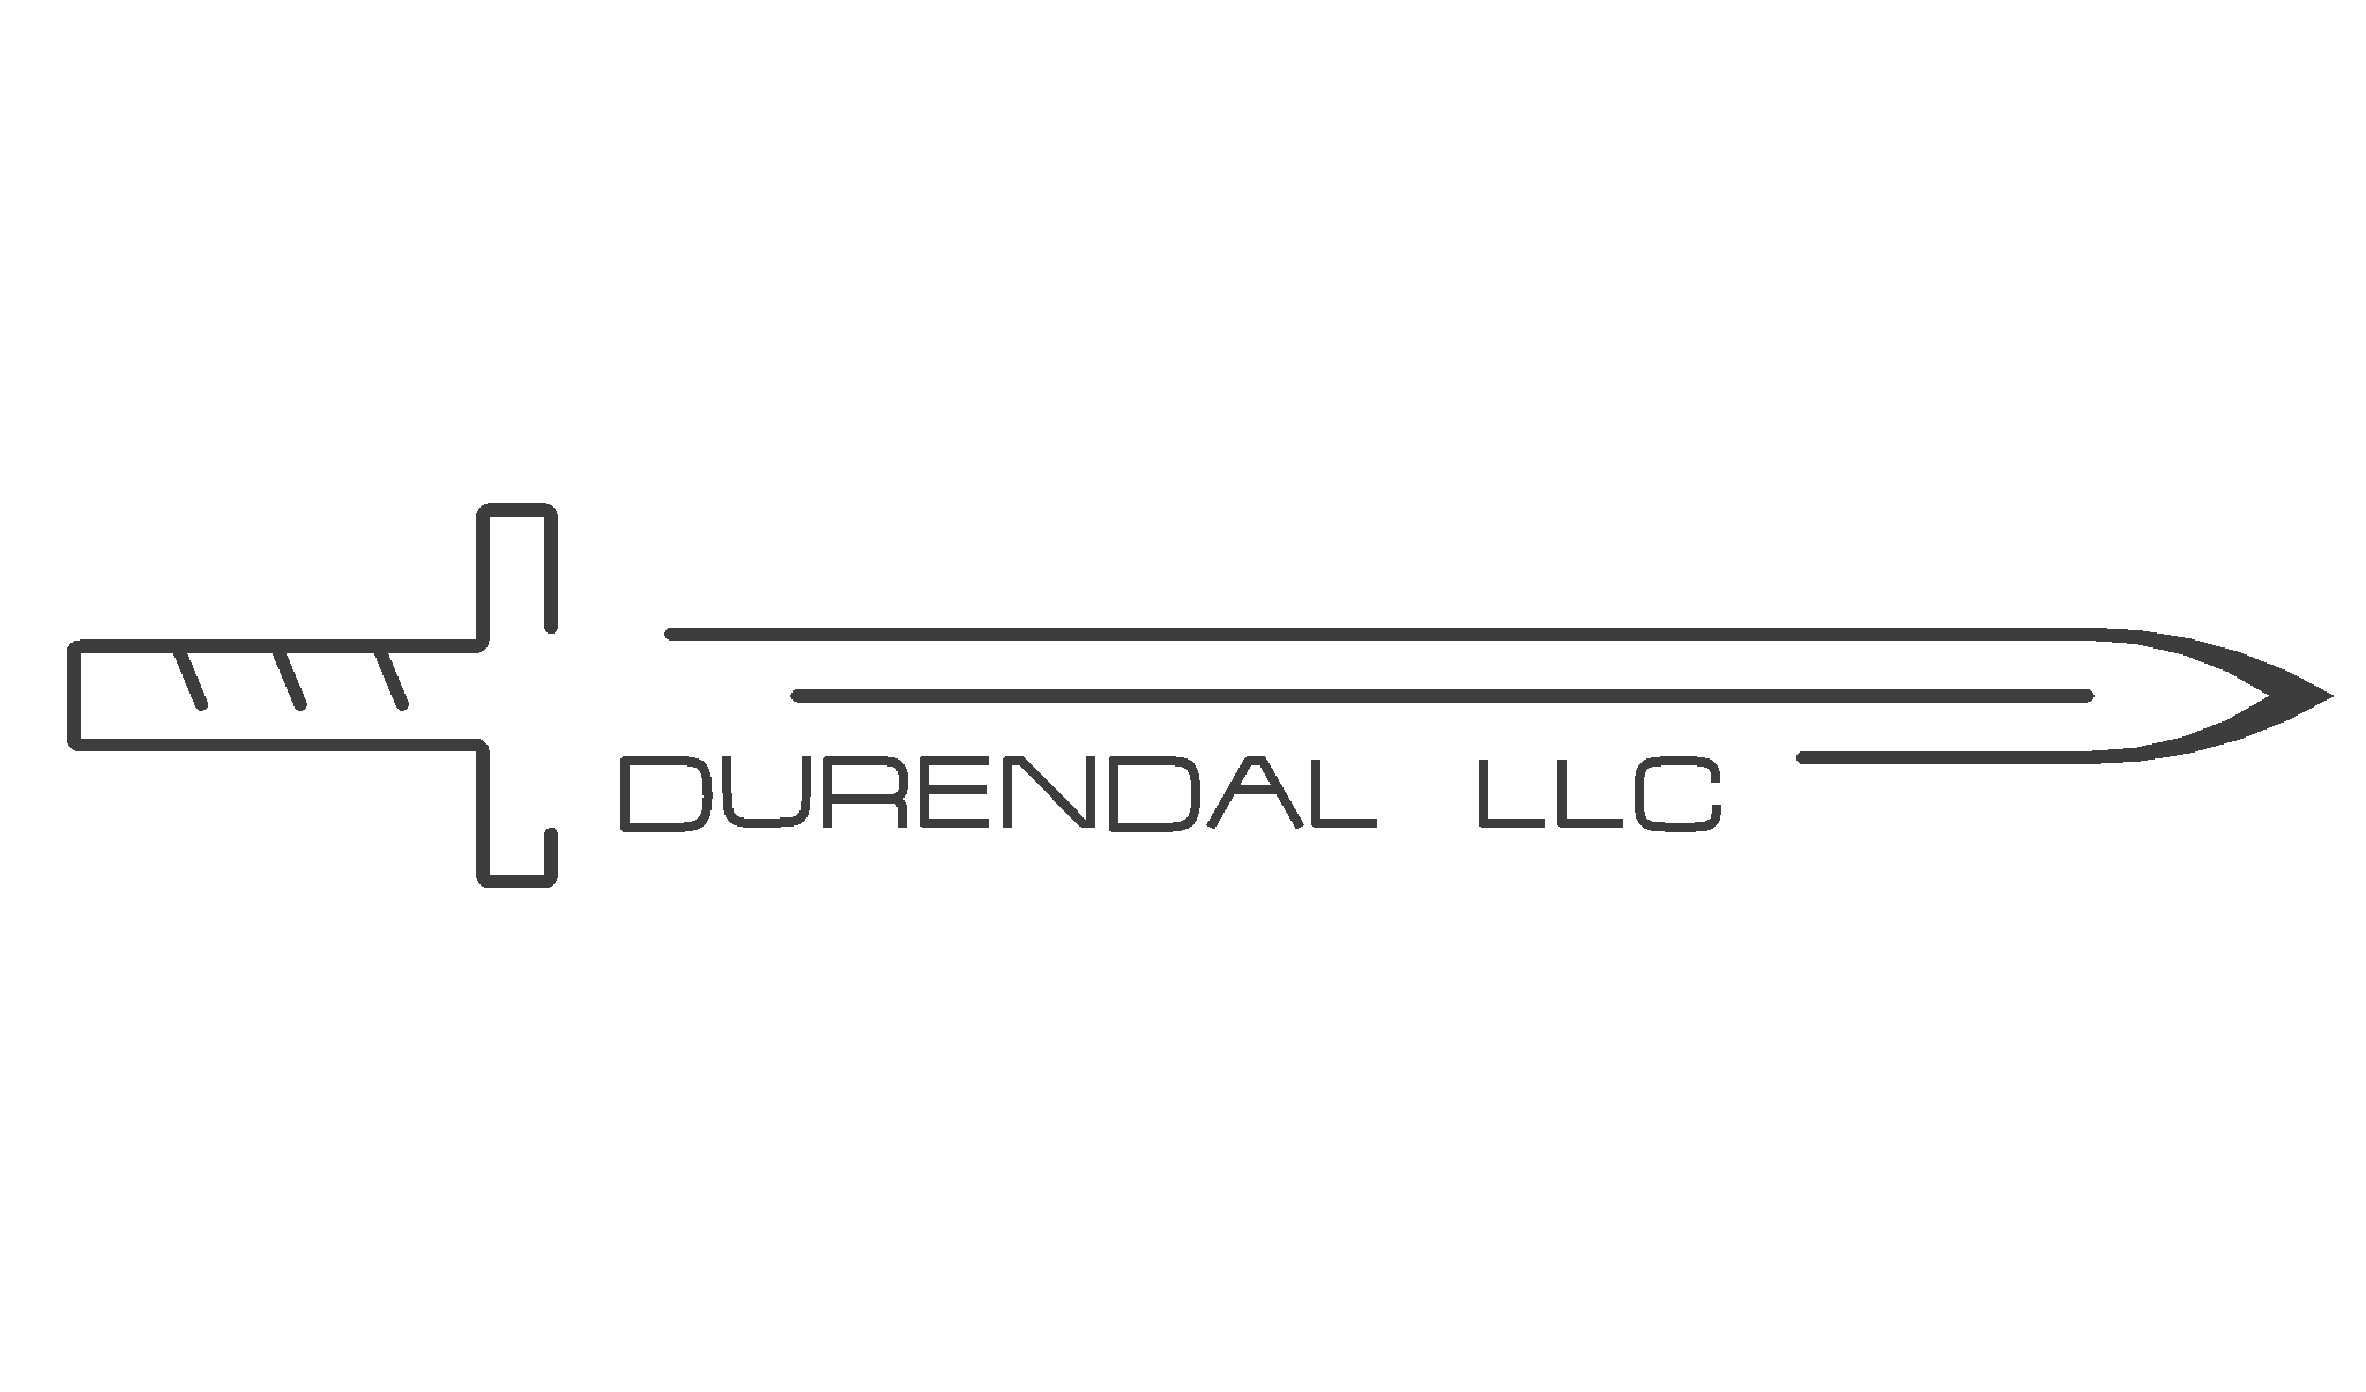 Durendal LLC